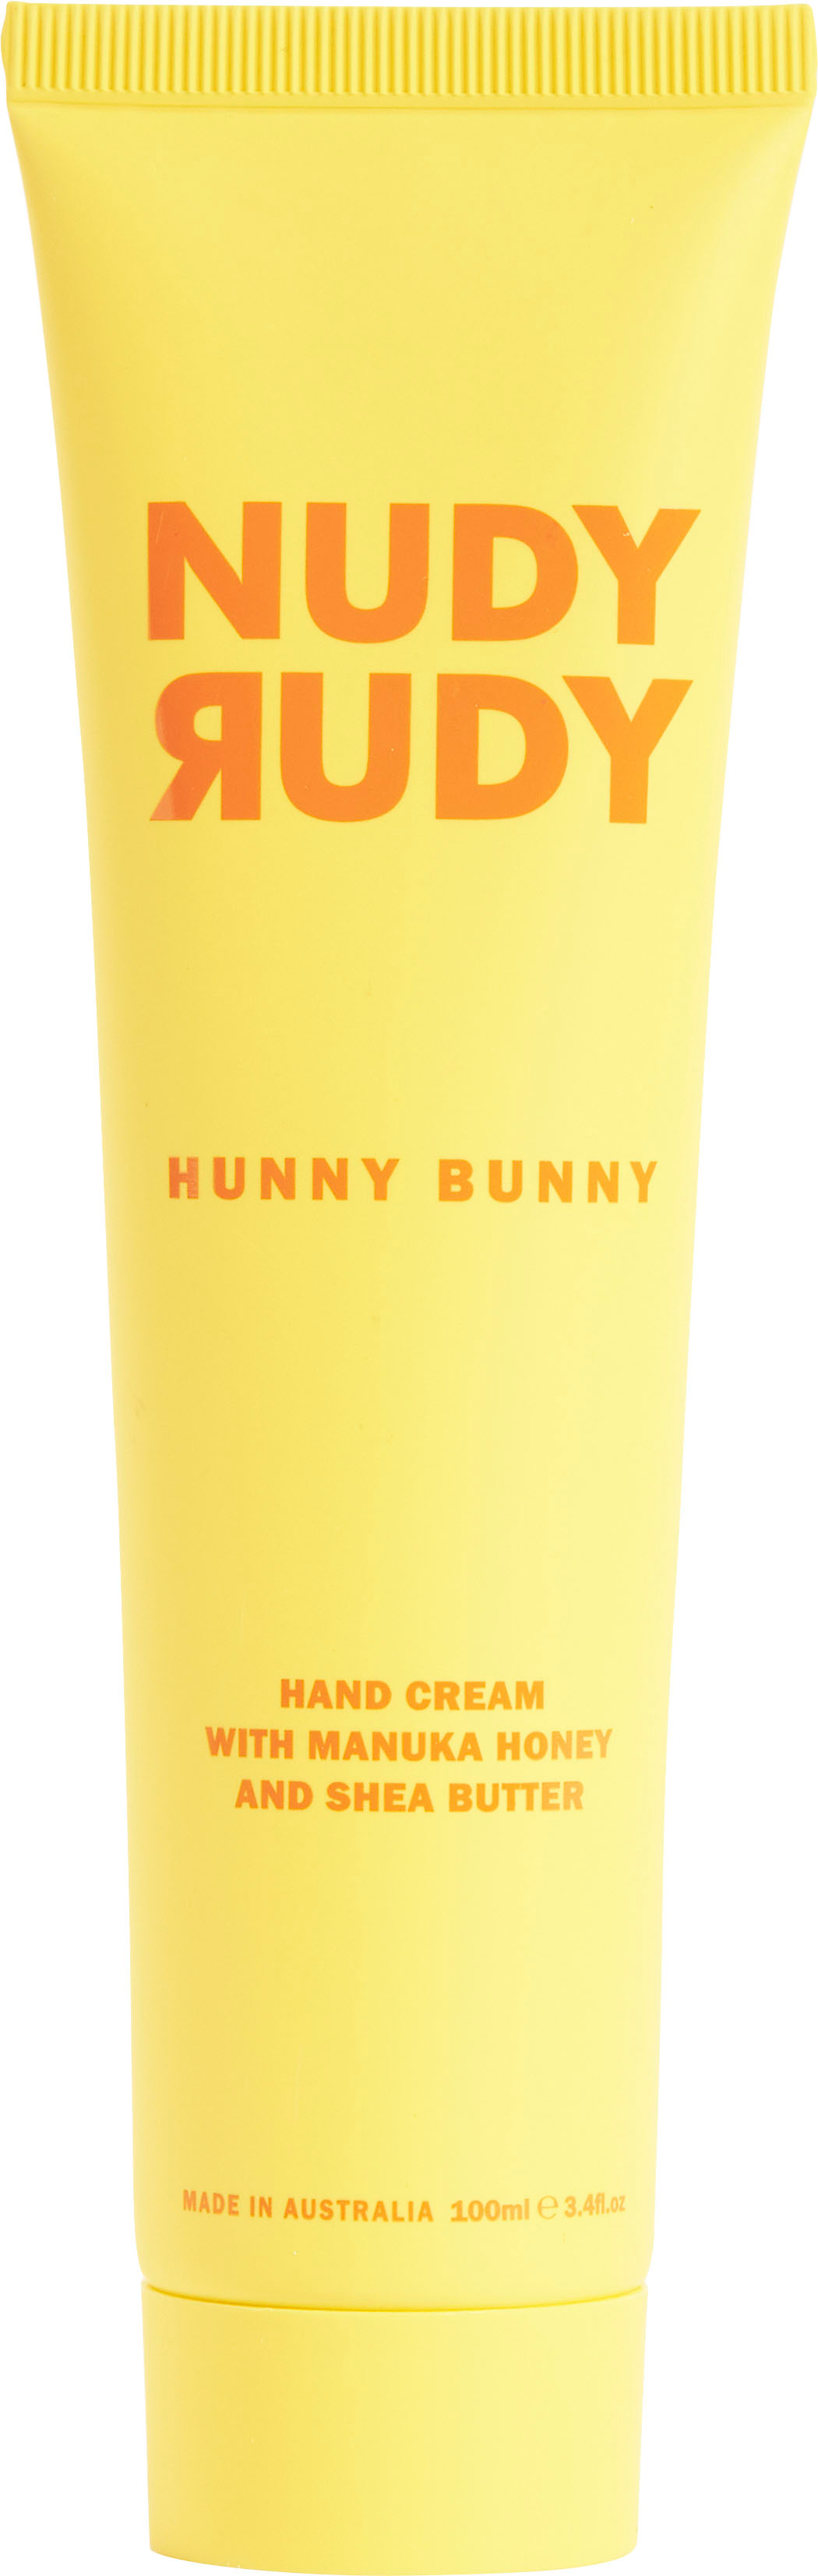 

Nudy Rudy - Hand Cream Hunny Bunny - Yellow